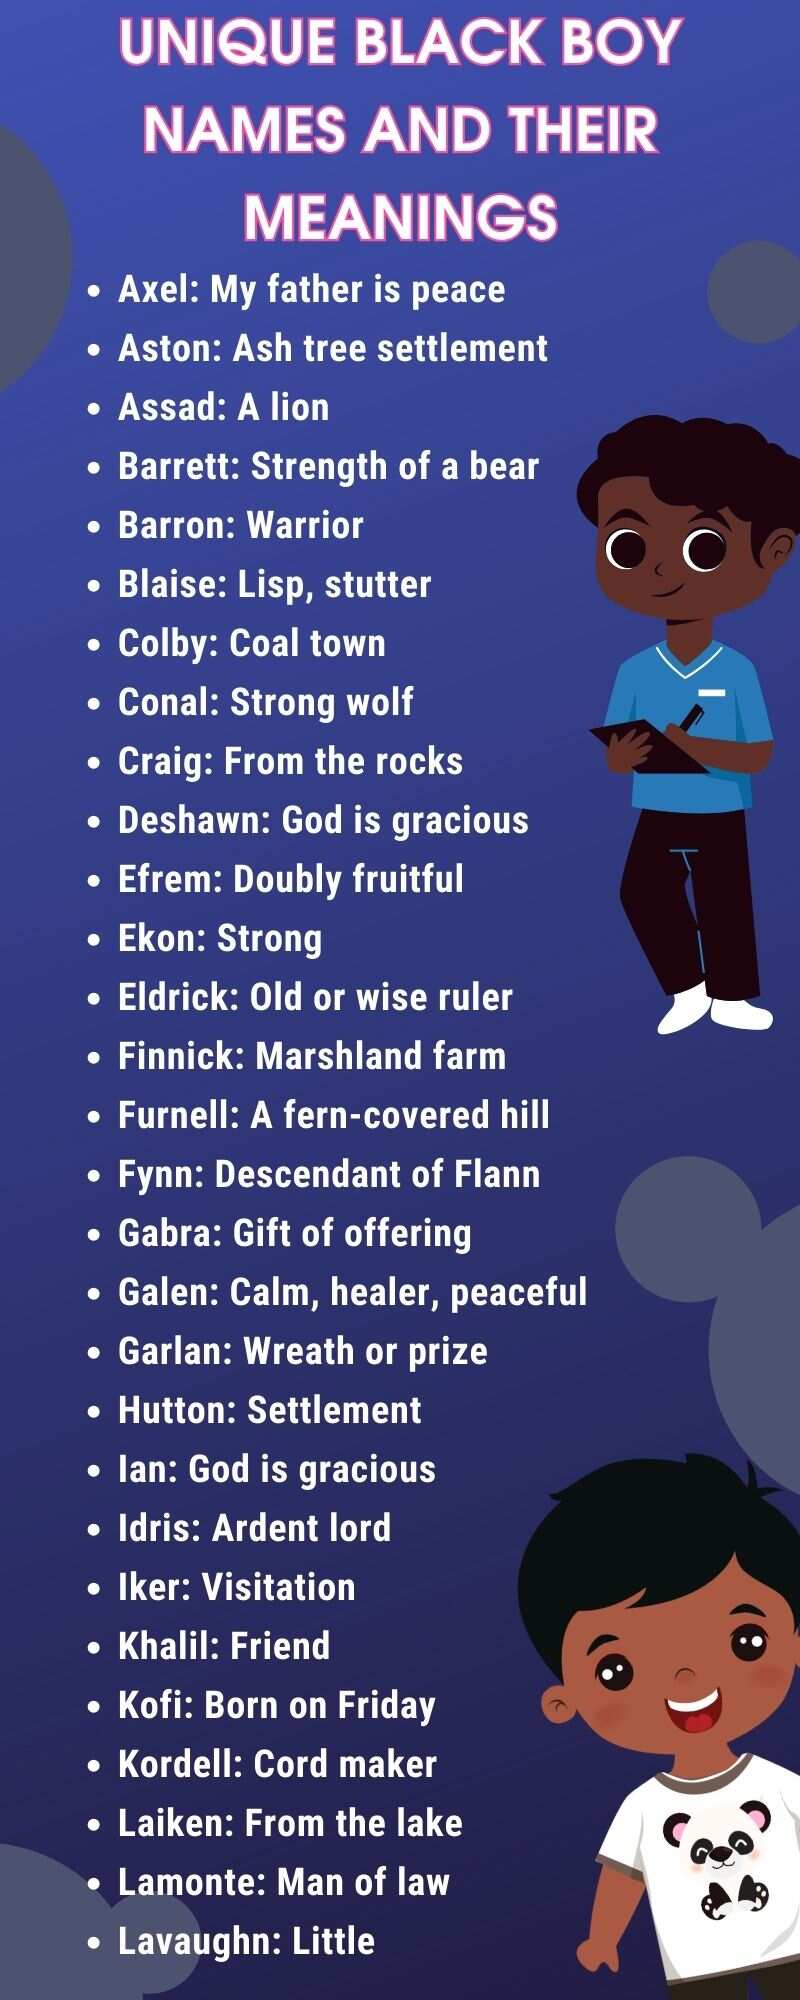 Unique black boy names